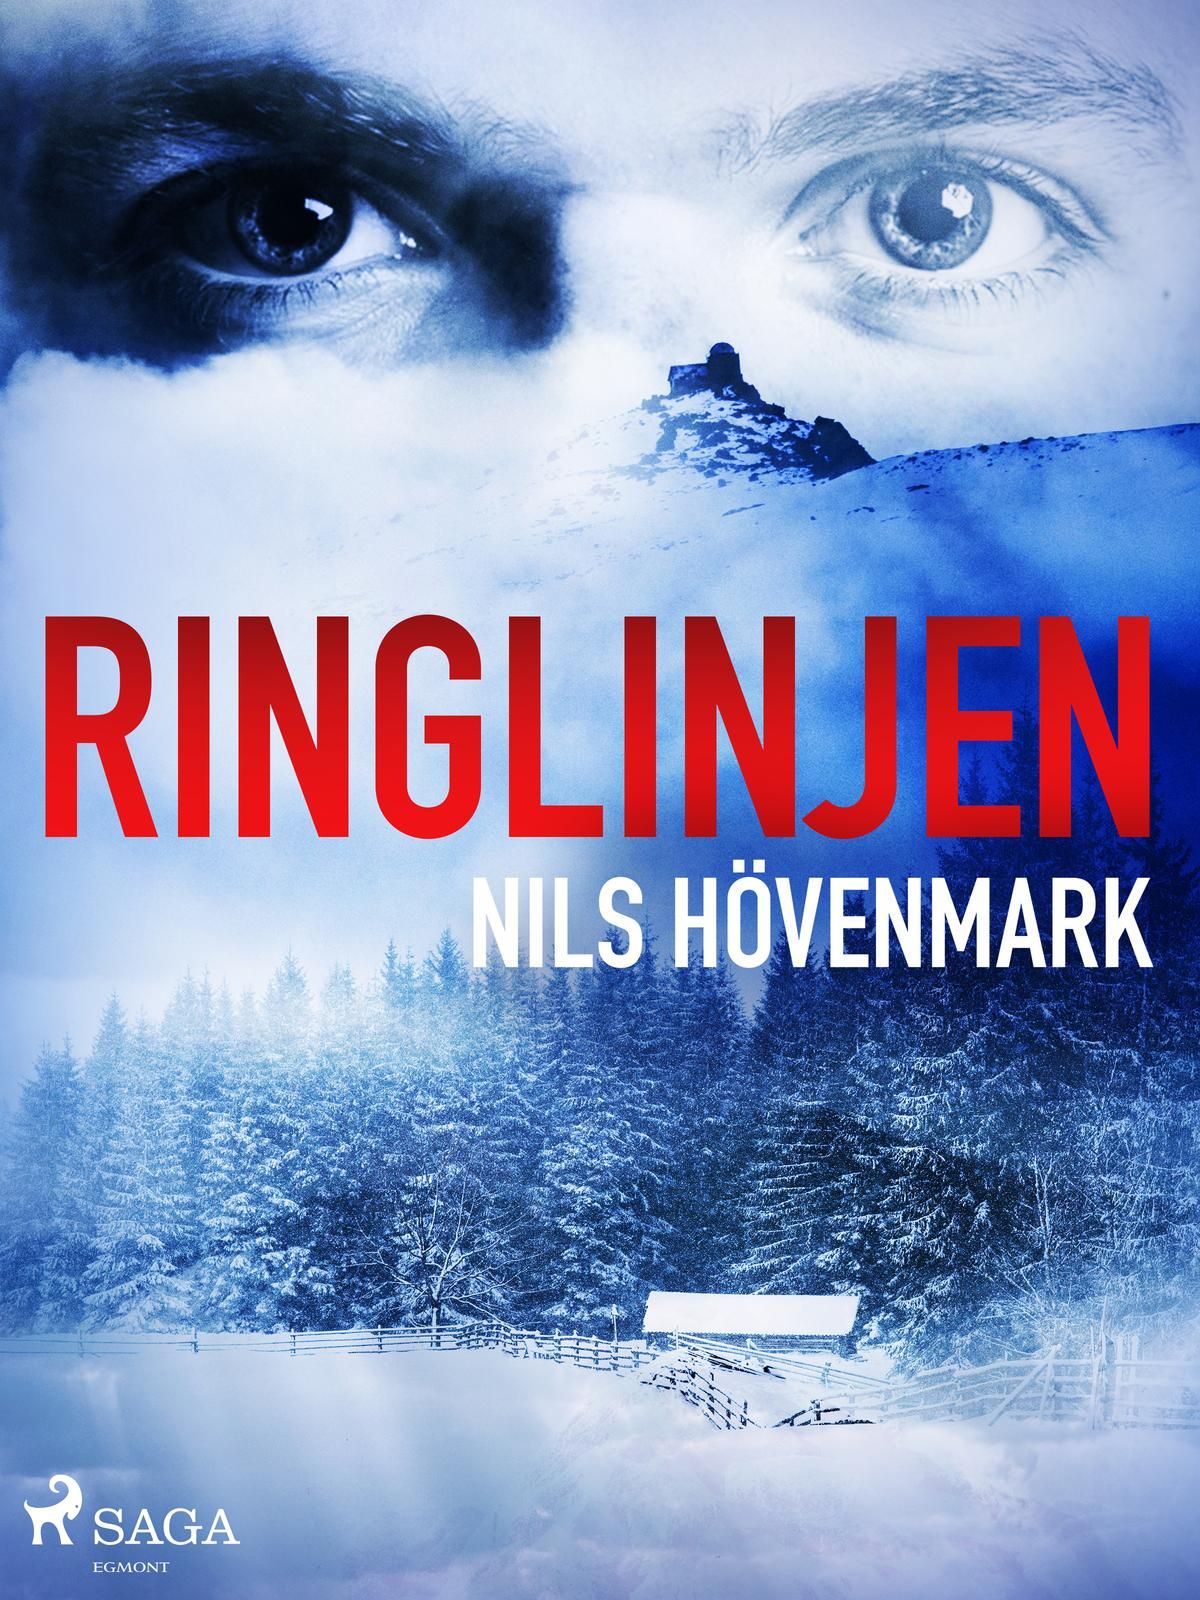 Ringlinjen, e-bok av Nils Hövenmark